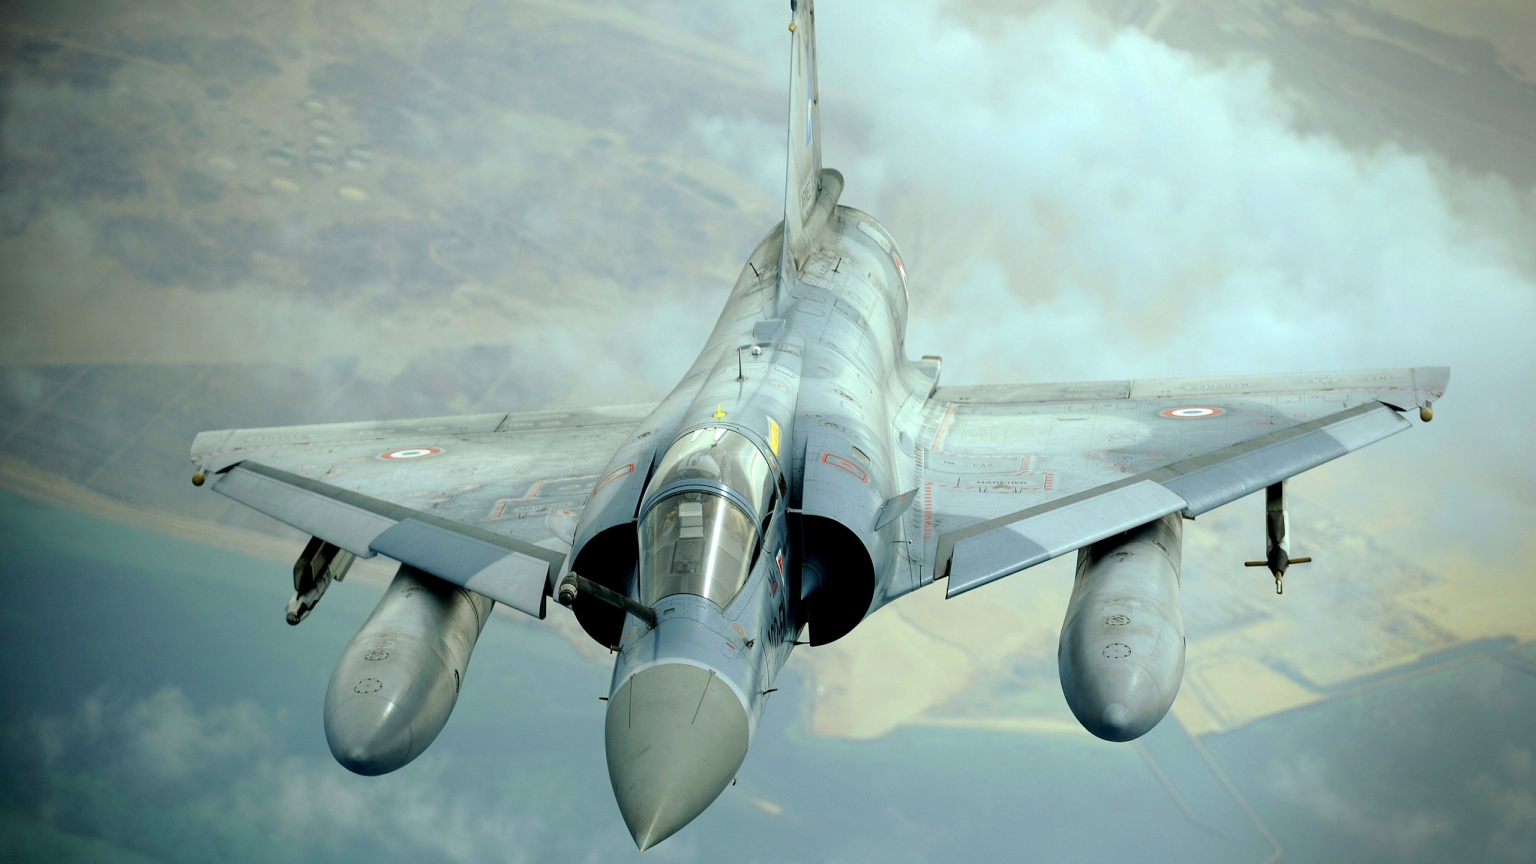 Dassault Mirage 2000 for 1536 x 864 HDTV resolution